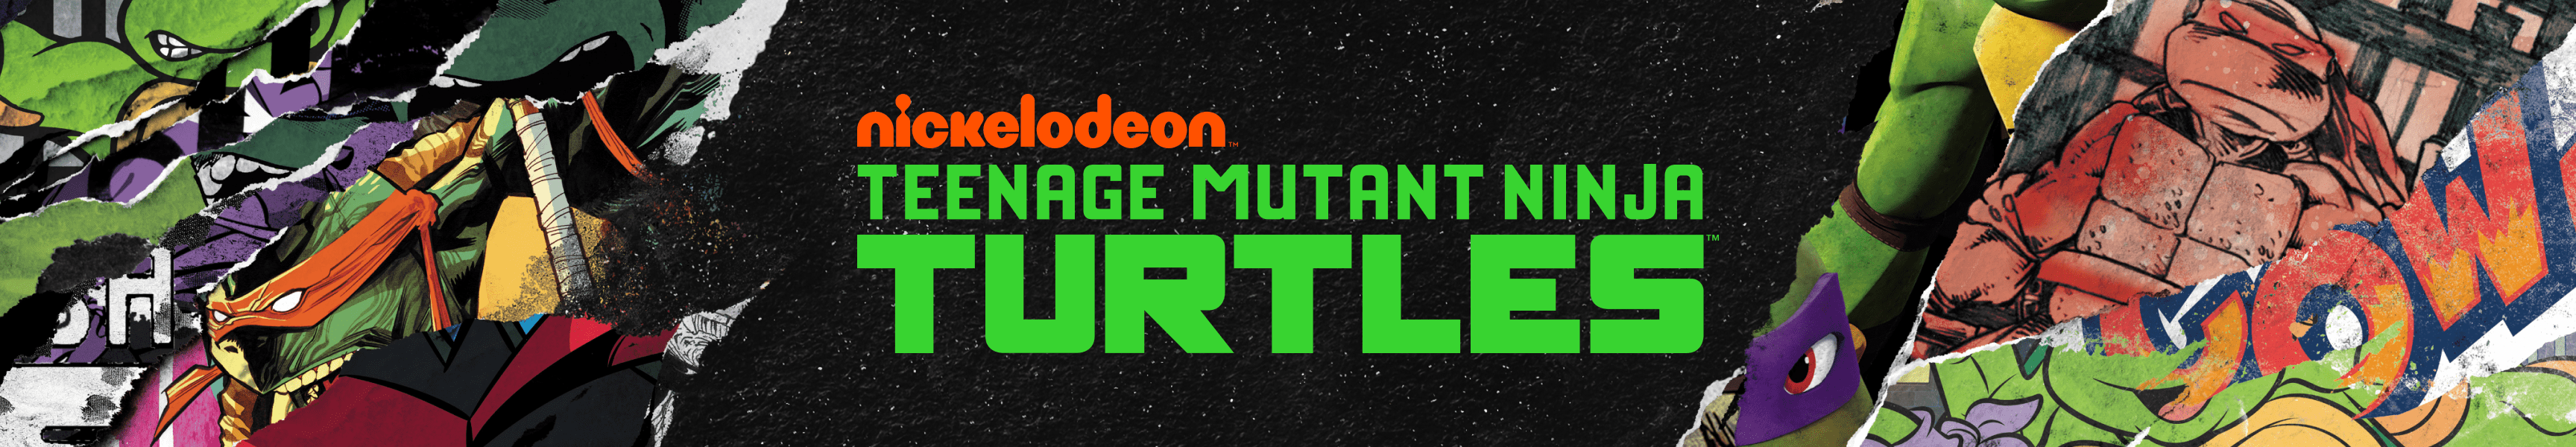 Teenage Mutant Ninja Turtles Juguetes